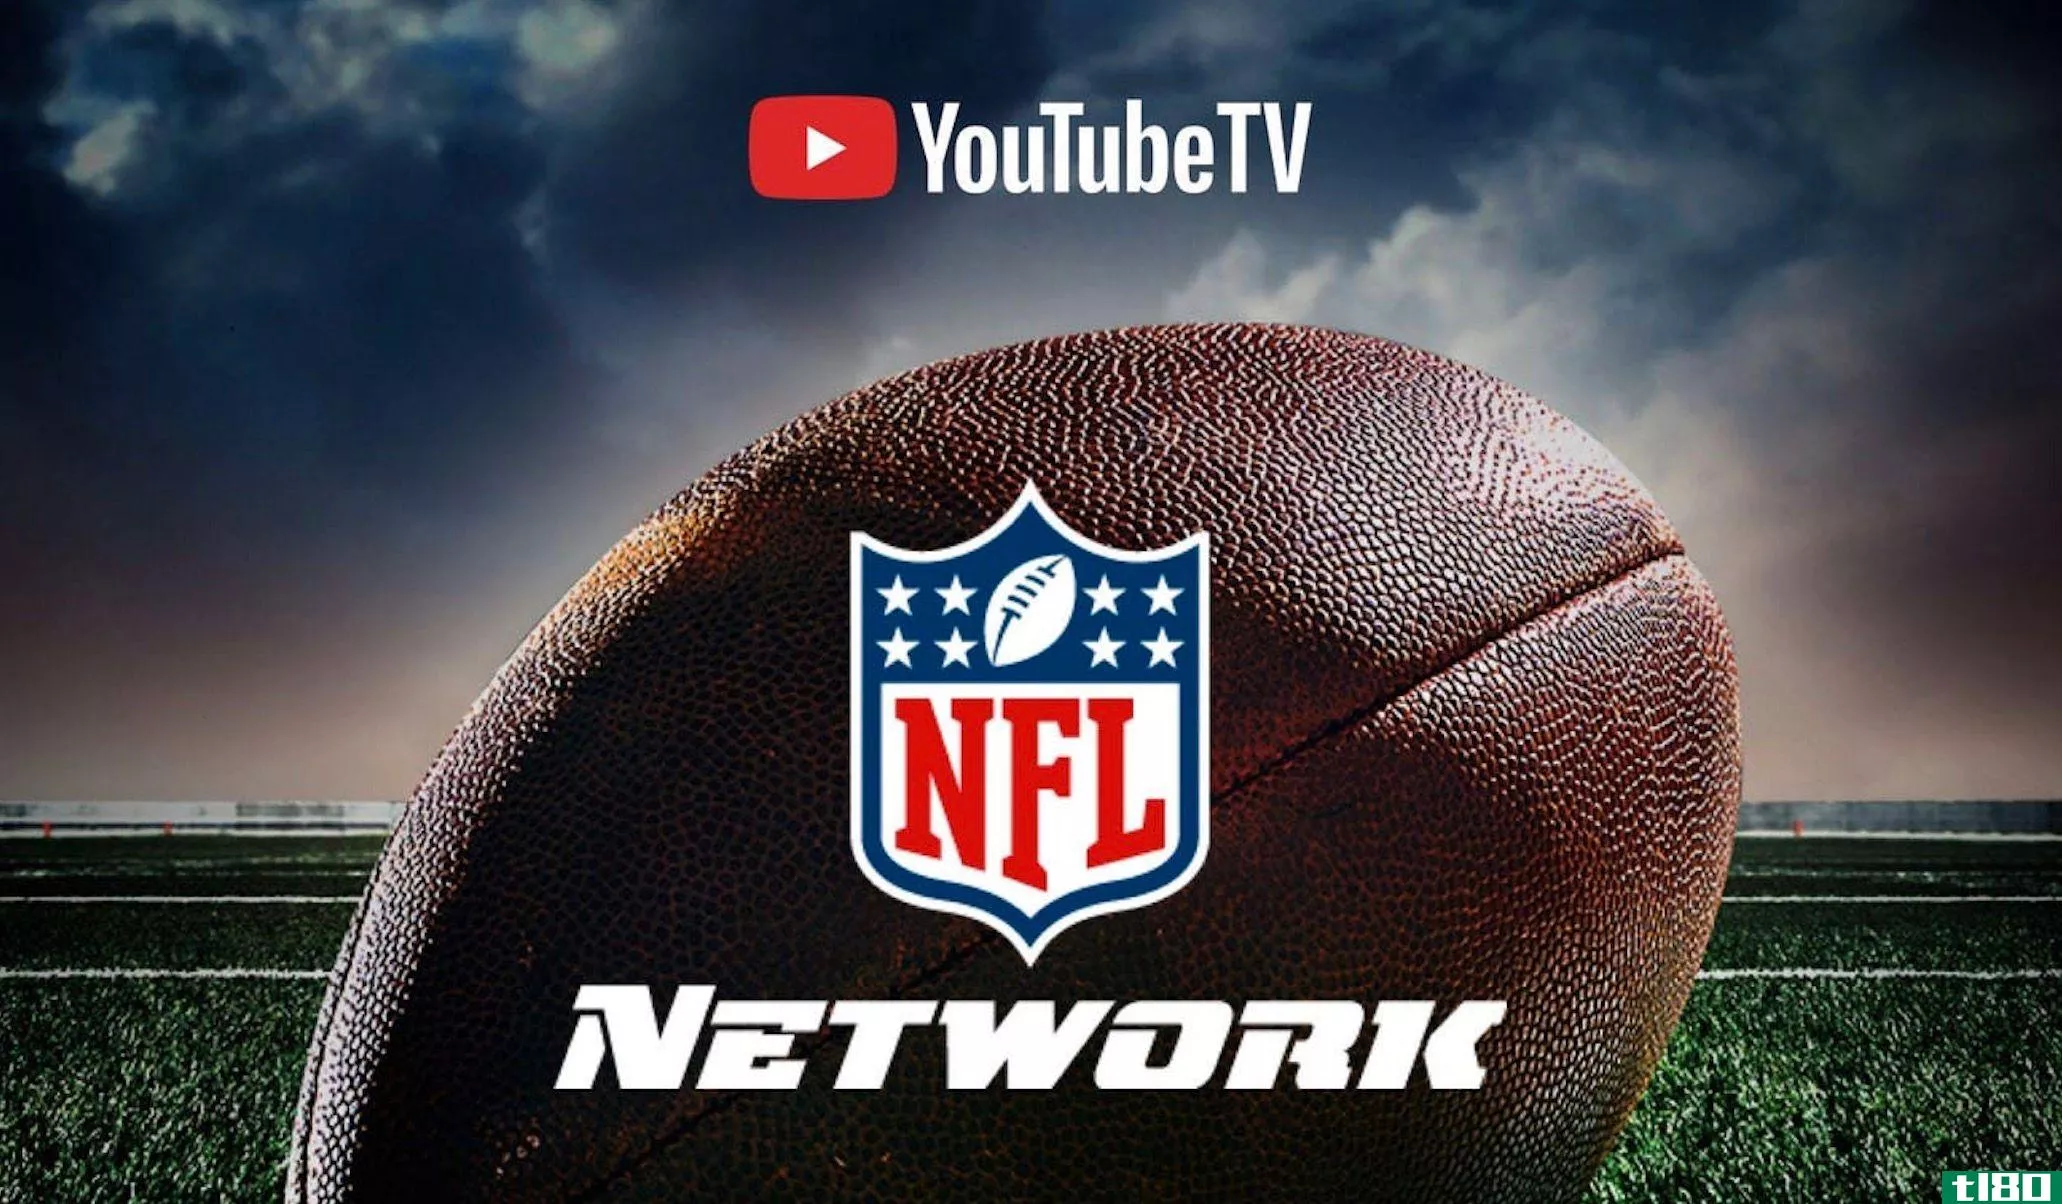 YouTube TV NFL